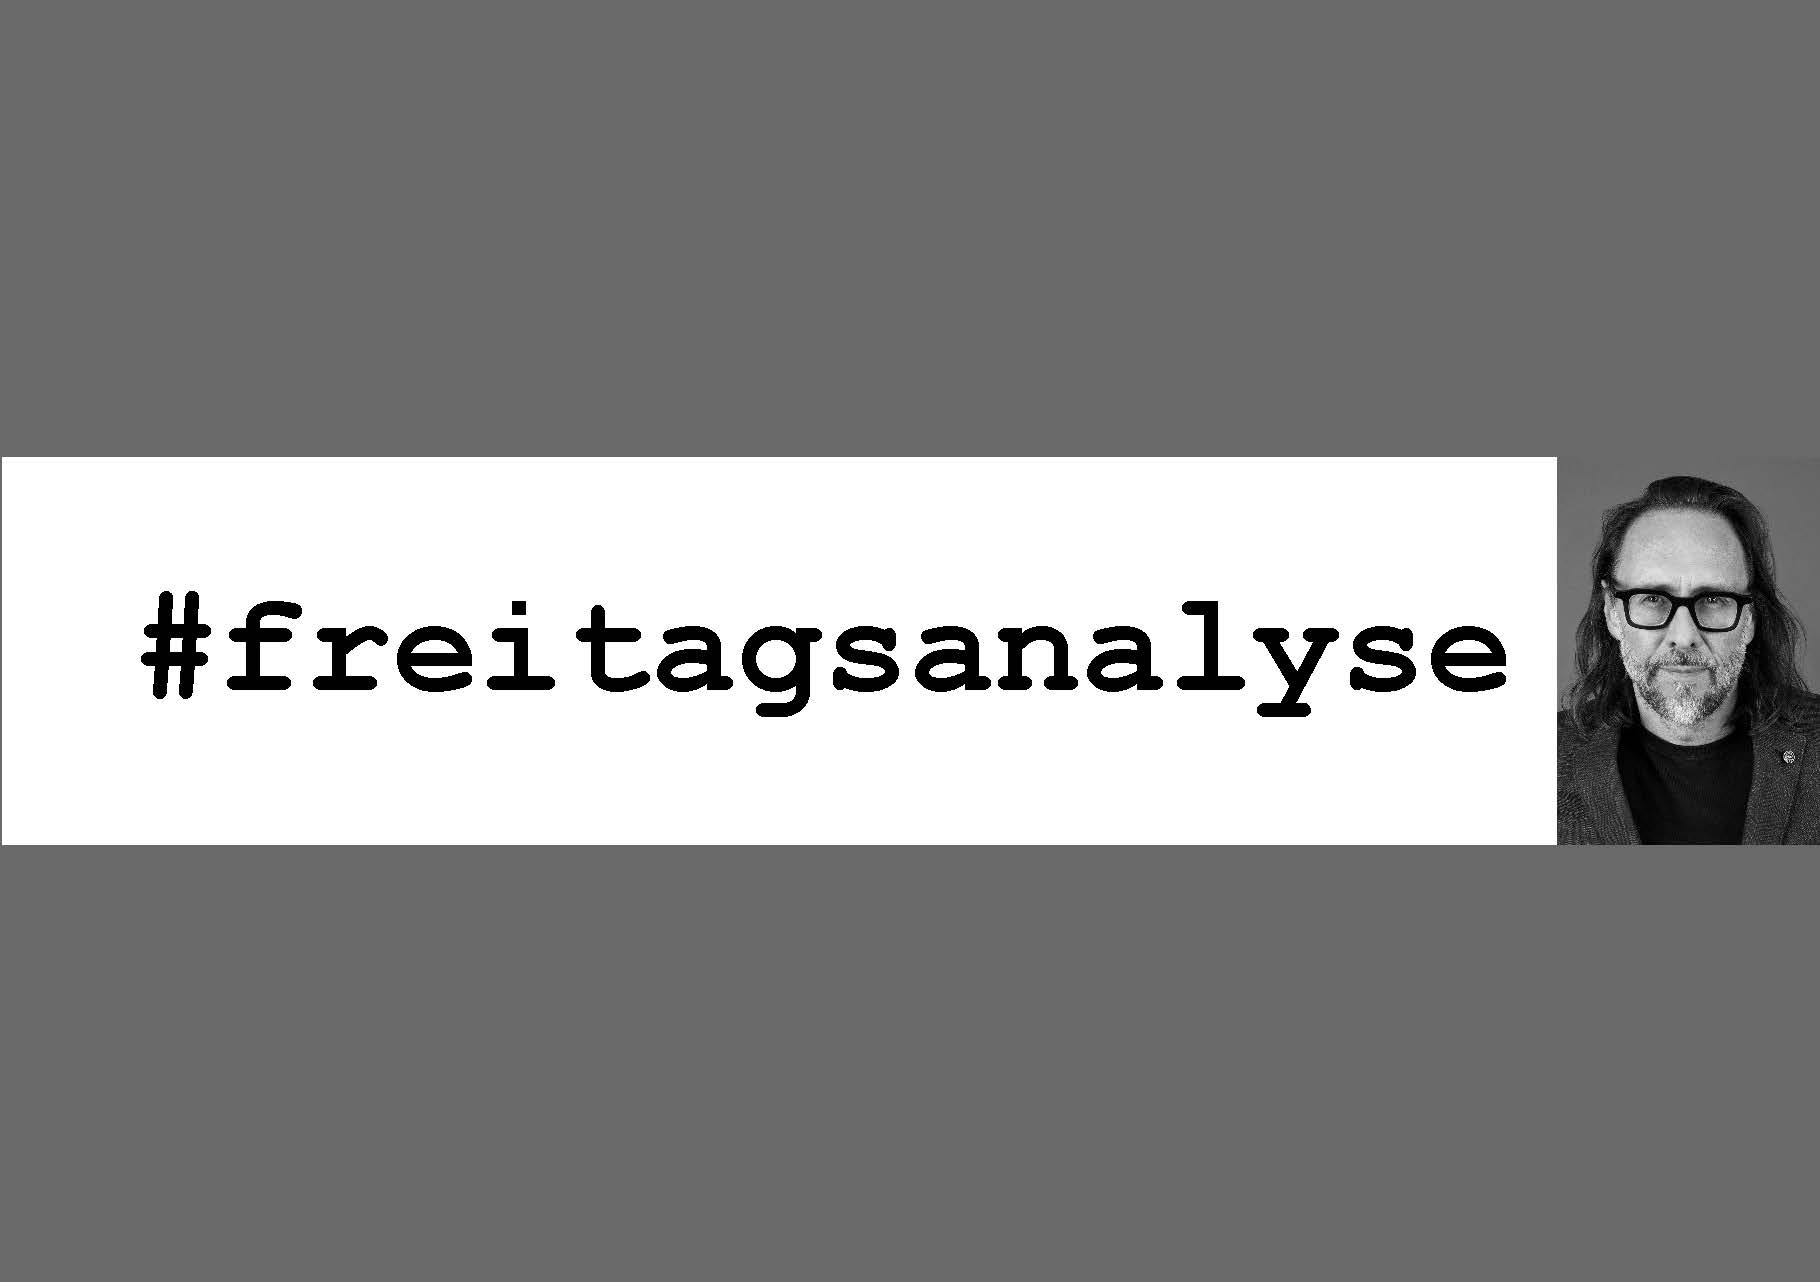 Banner mit dem Schriftzug #freitagsanalyse und einem Portraitfoto von Markus Freitag